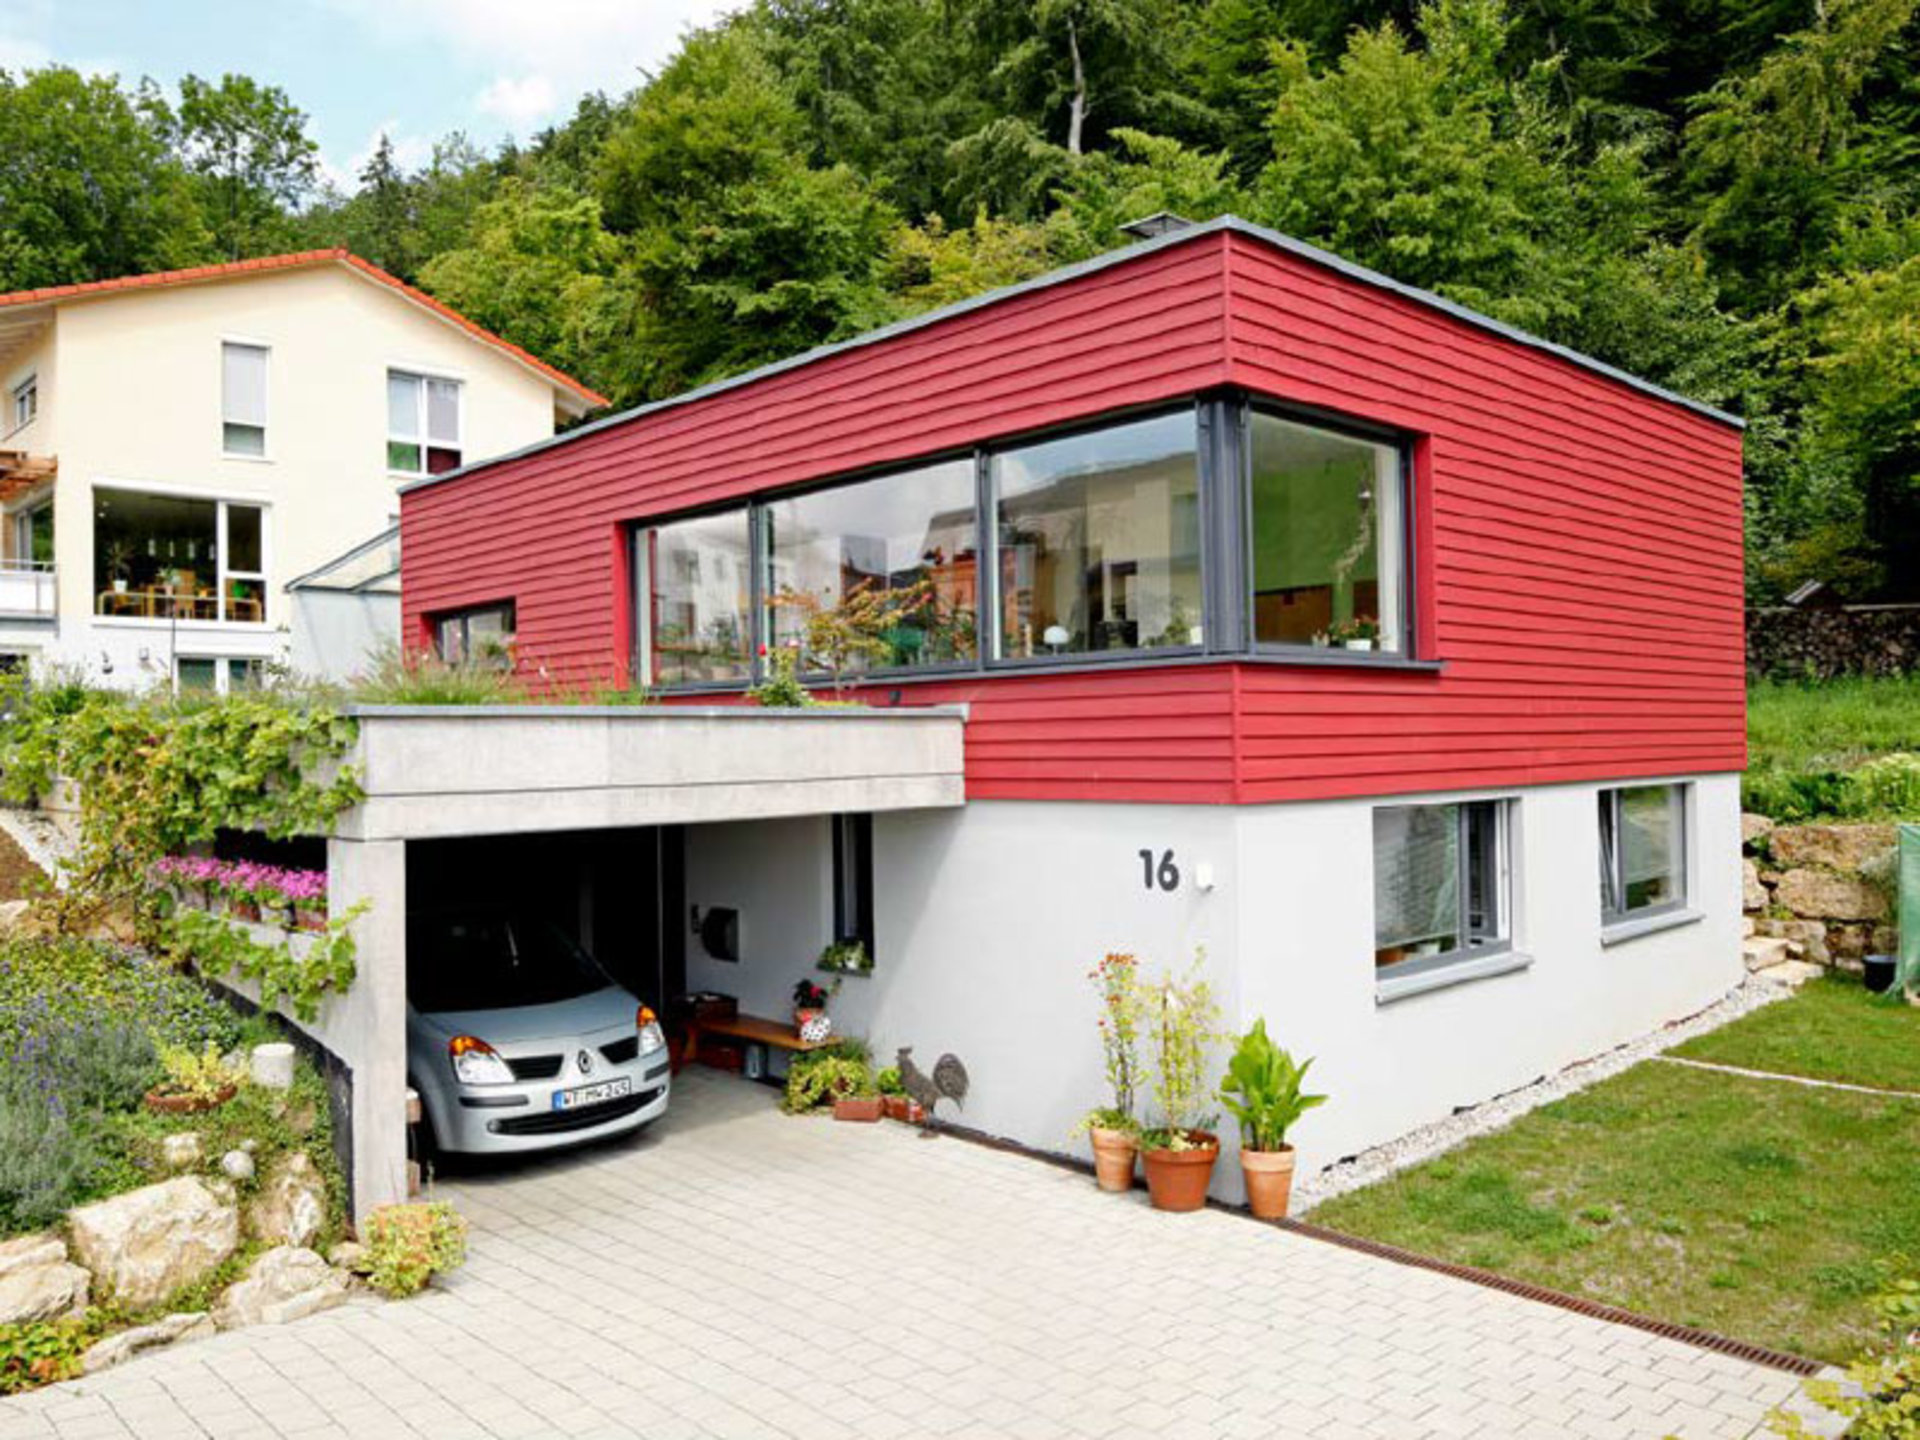 Einfach aber schick präsentiert sich Haus Breitenbach mit einer farbenfrohen Fassade. (Foto: BAUMEISTER-HAUS)